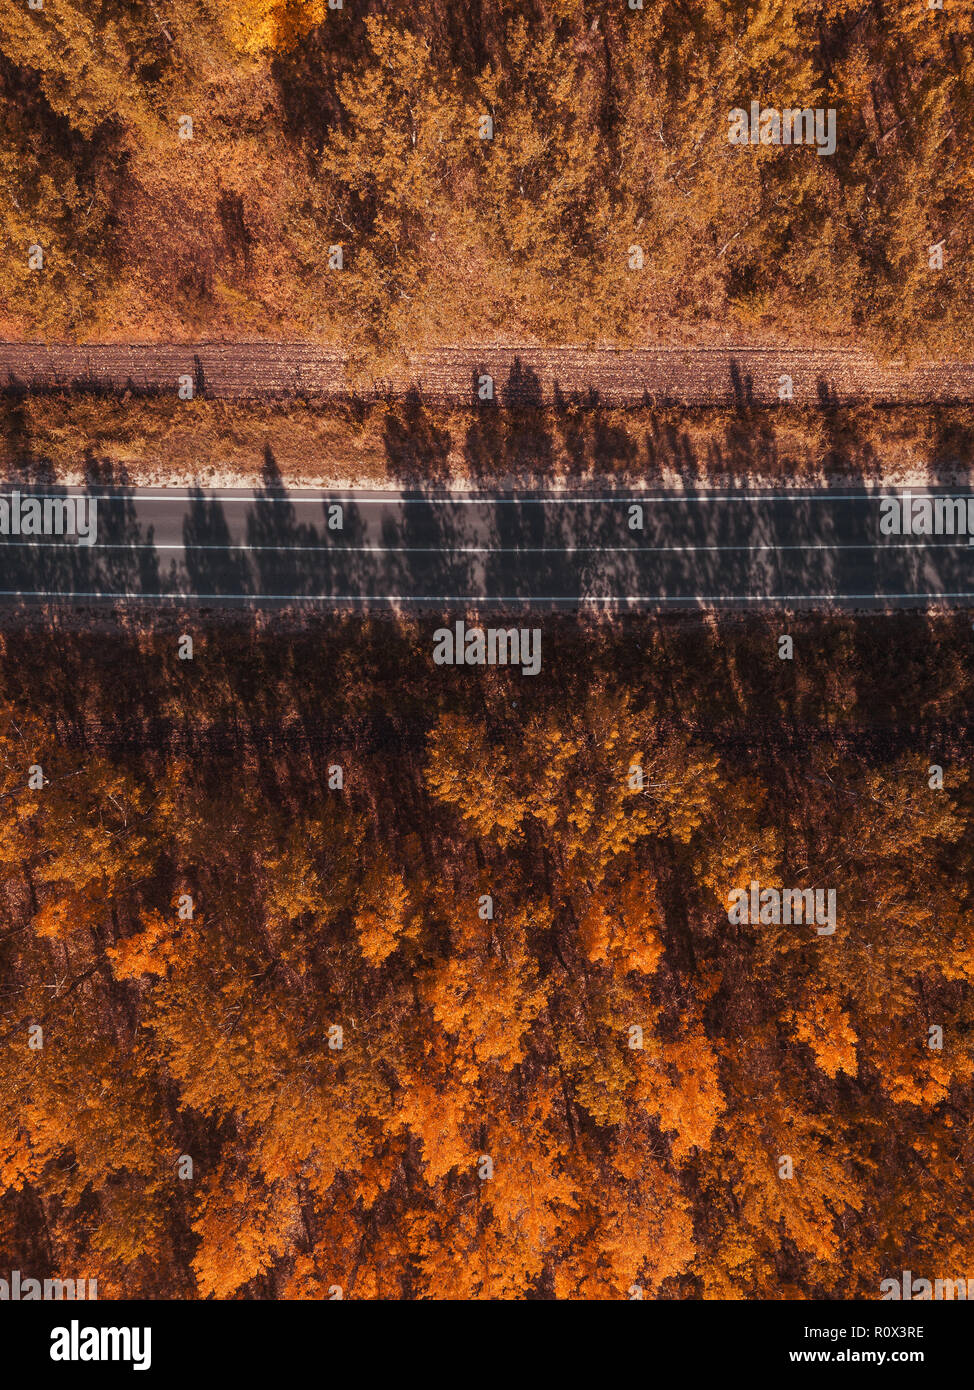 Vue aérienne de route vide à travers forêt en automne, l'été indien décor de point de vue de drones Banque D'Images